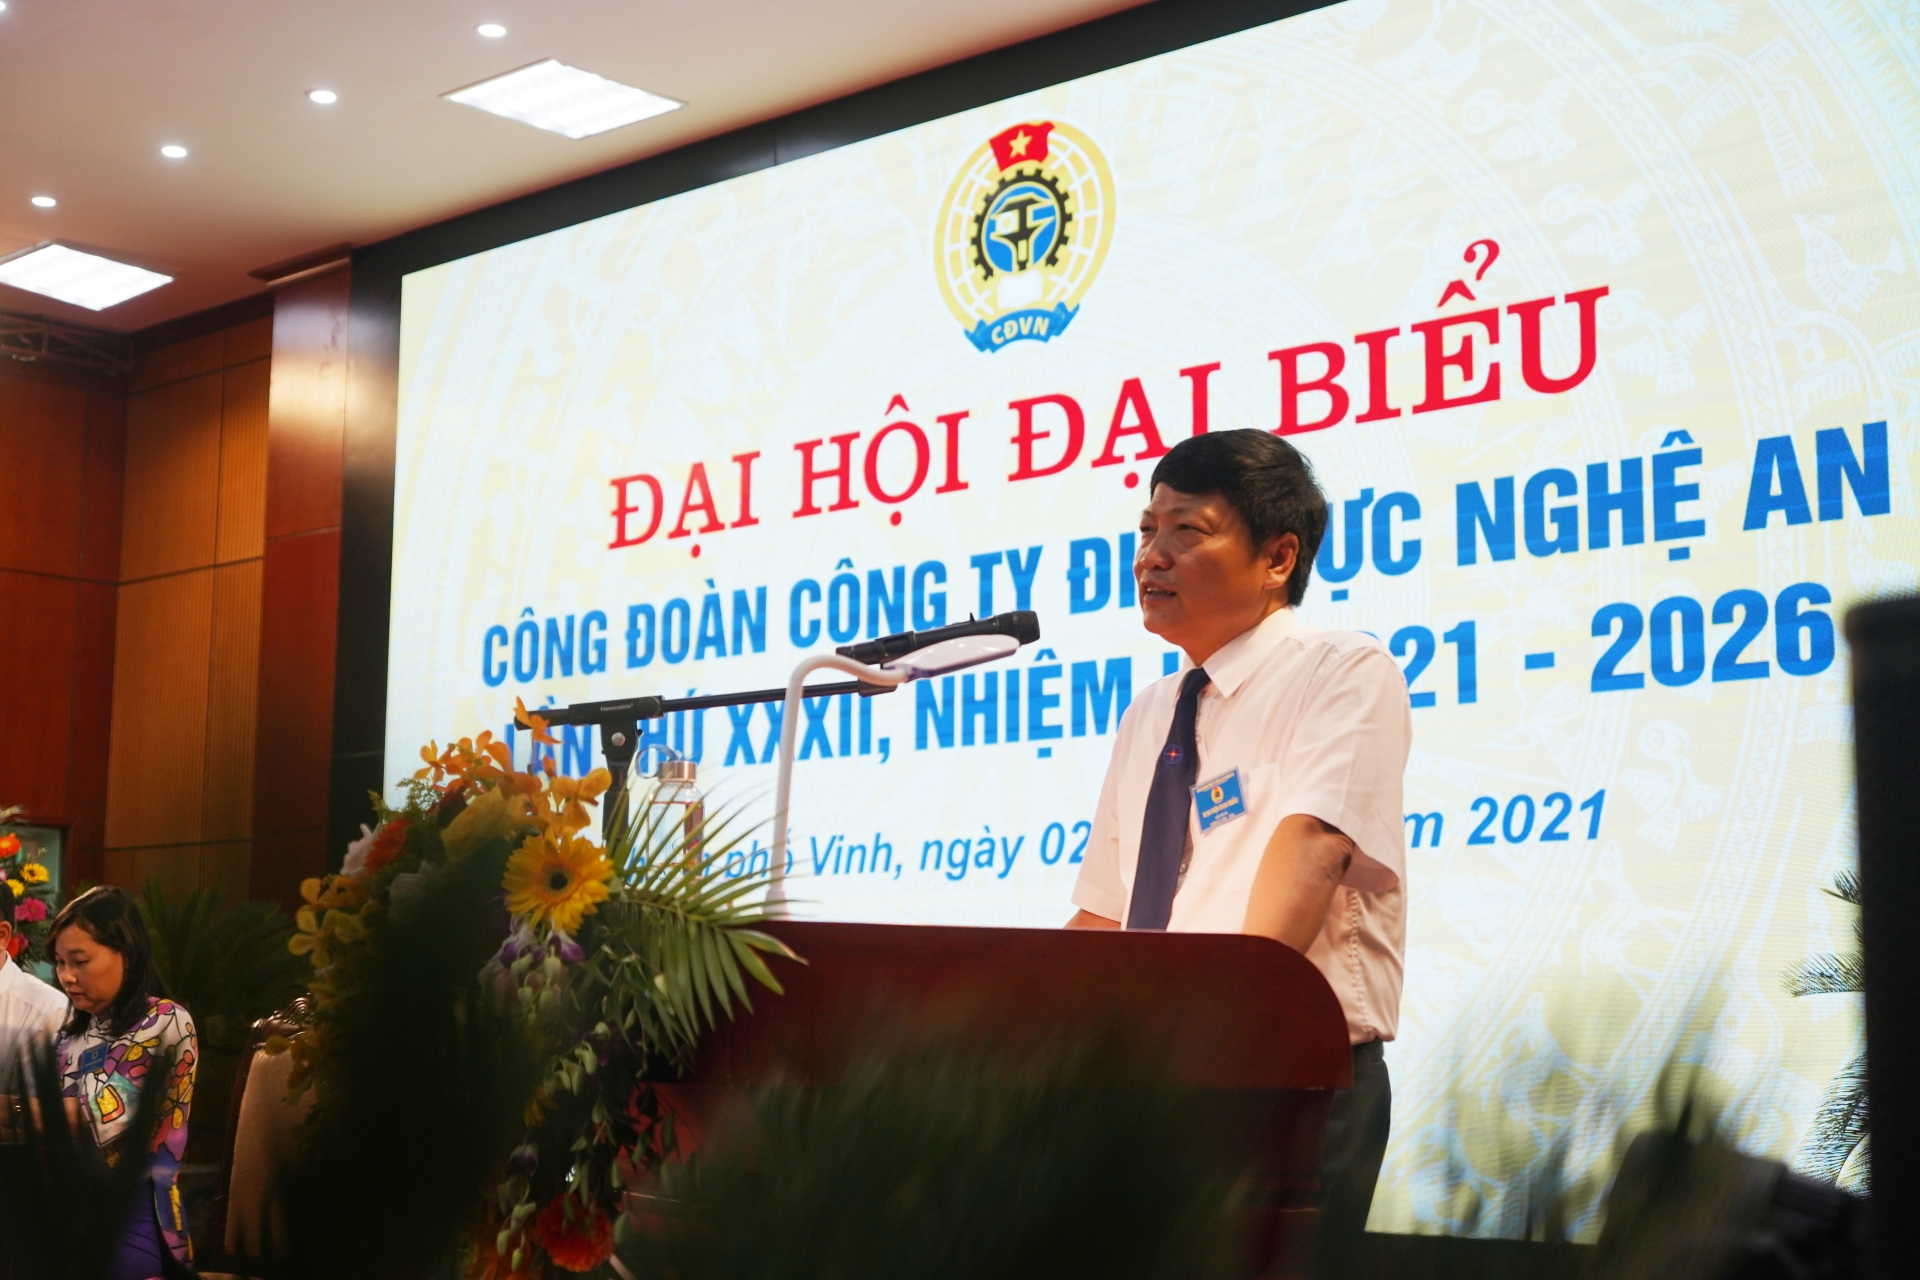 Công ty Điện lực Nghệ An tổ chức Đại hội Công đoàn nhiệm kỳ 2021 -2026